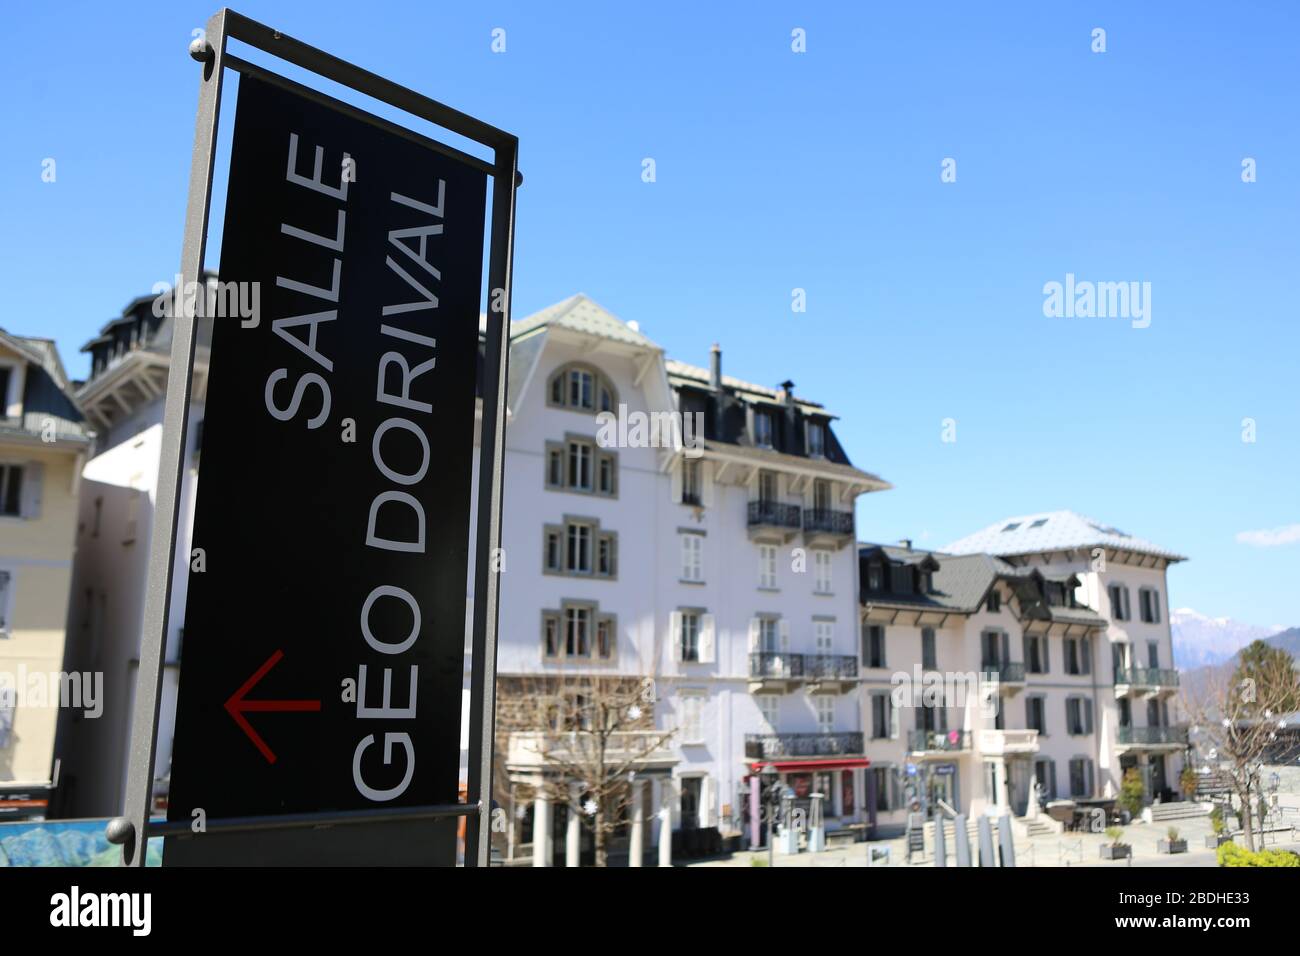 Salle d'exposition Géo Dorival. Saint-Gervais-les-Bains. Haute-Savoie. France. Stock Photo